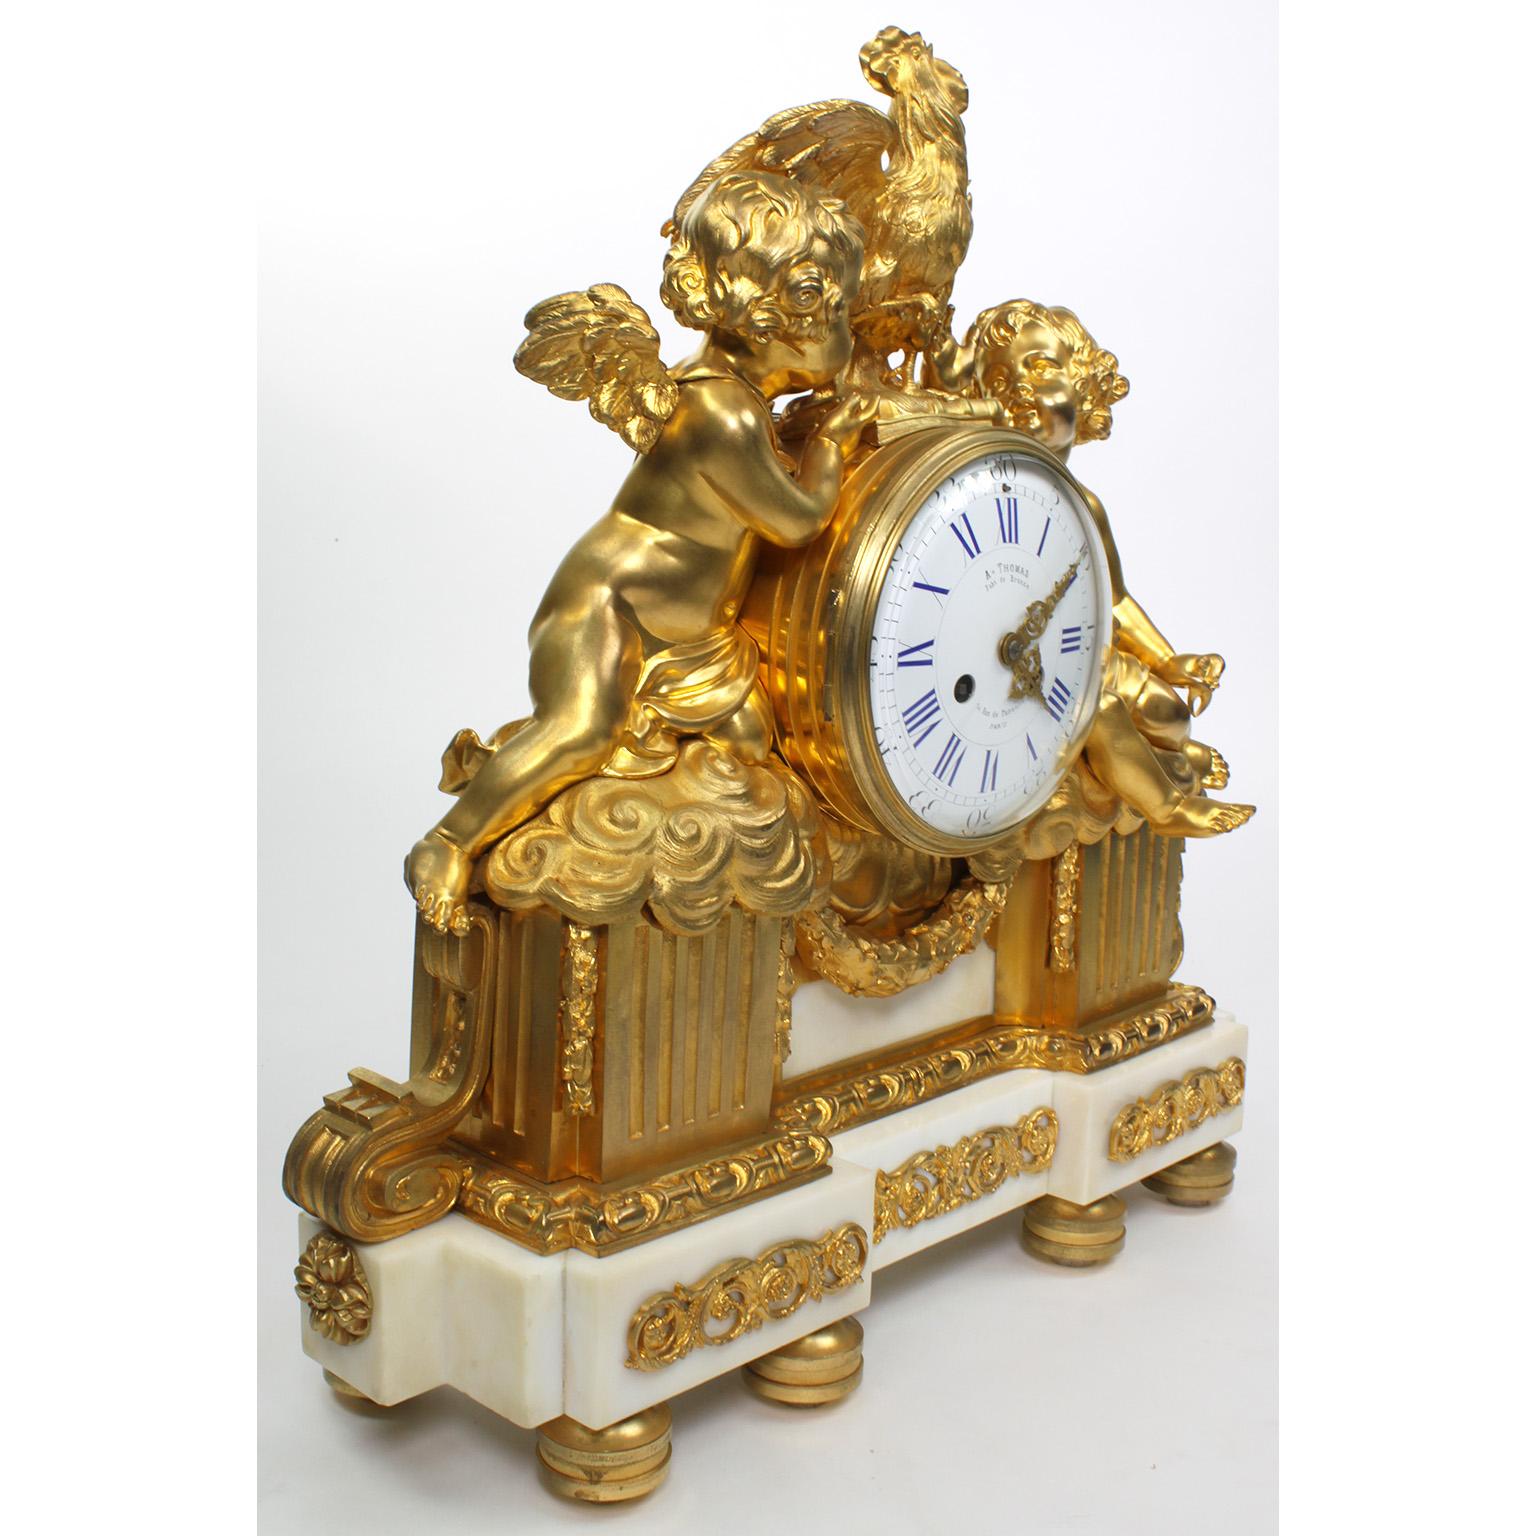 Très belle pendule de cheminée de style Louis XV du XIXe siècle, en bronze doré et marbre blanc. Le corps en bronze doré finement ciselé, avec son mercure doré bicolore d'origine, est centré par un cadran d'horloge circulaire en porcelaine émaillée